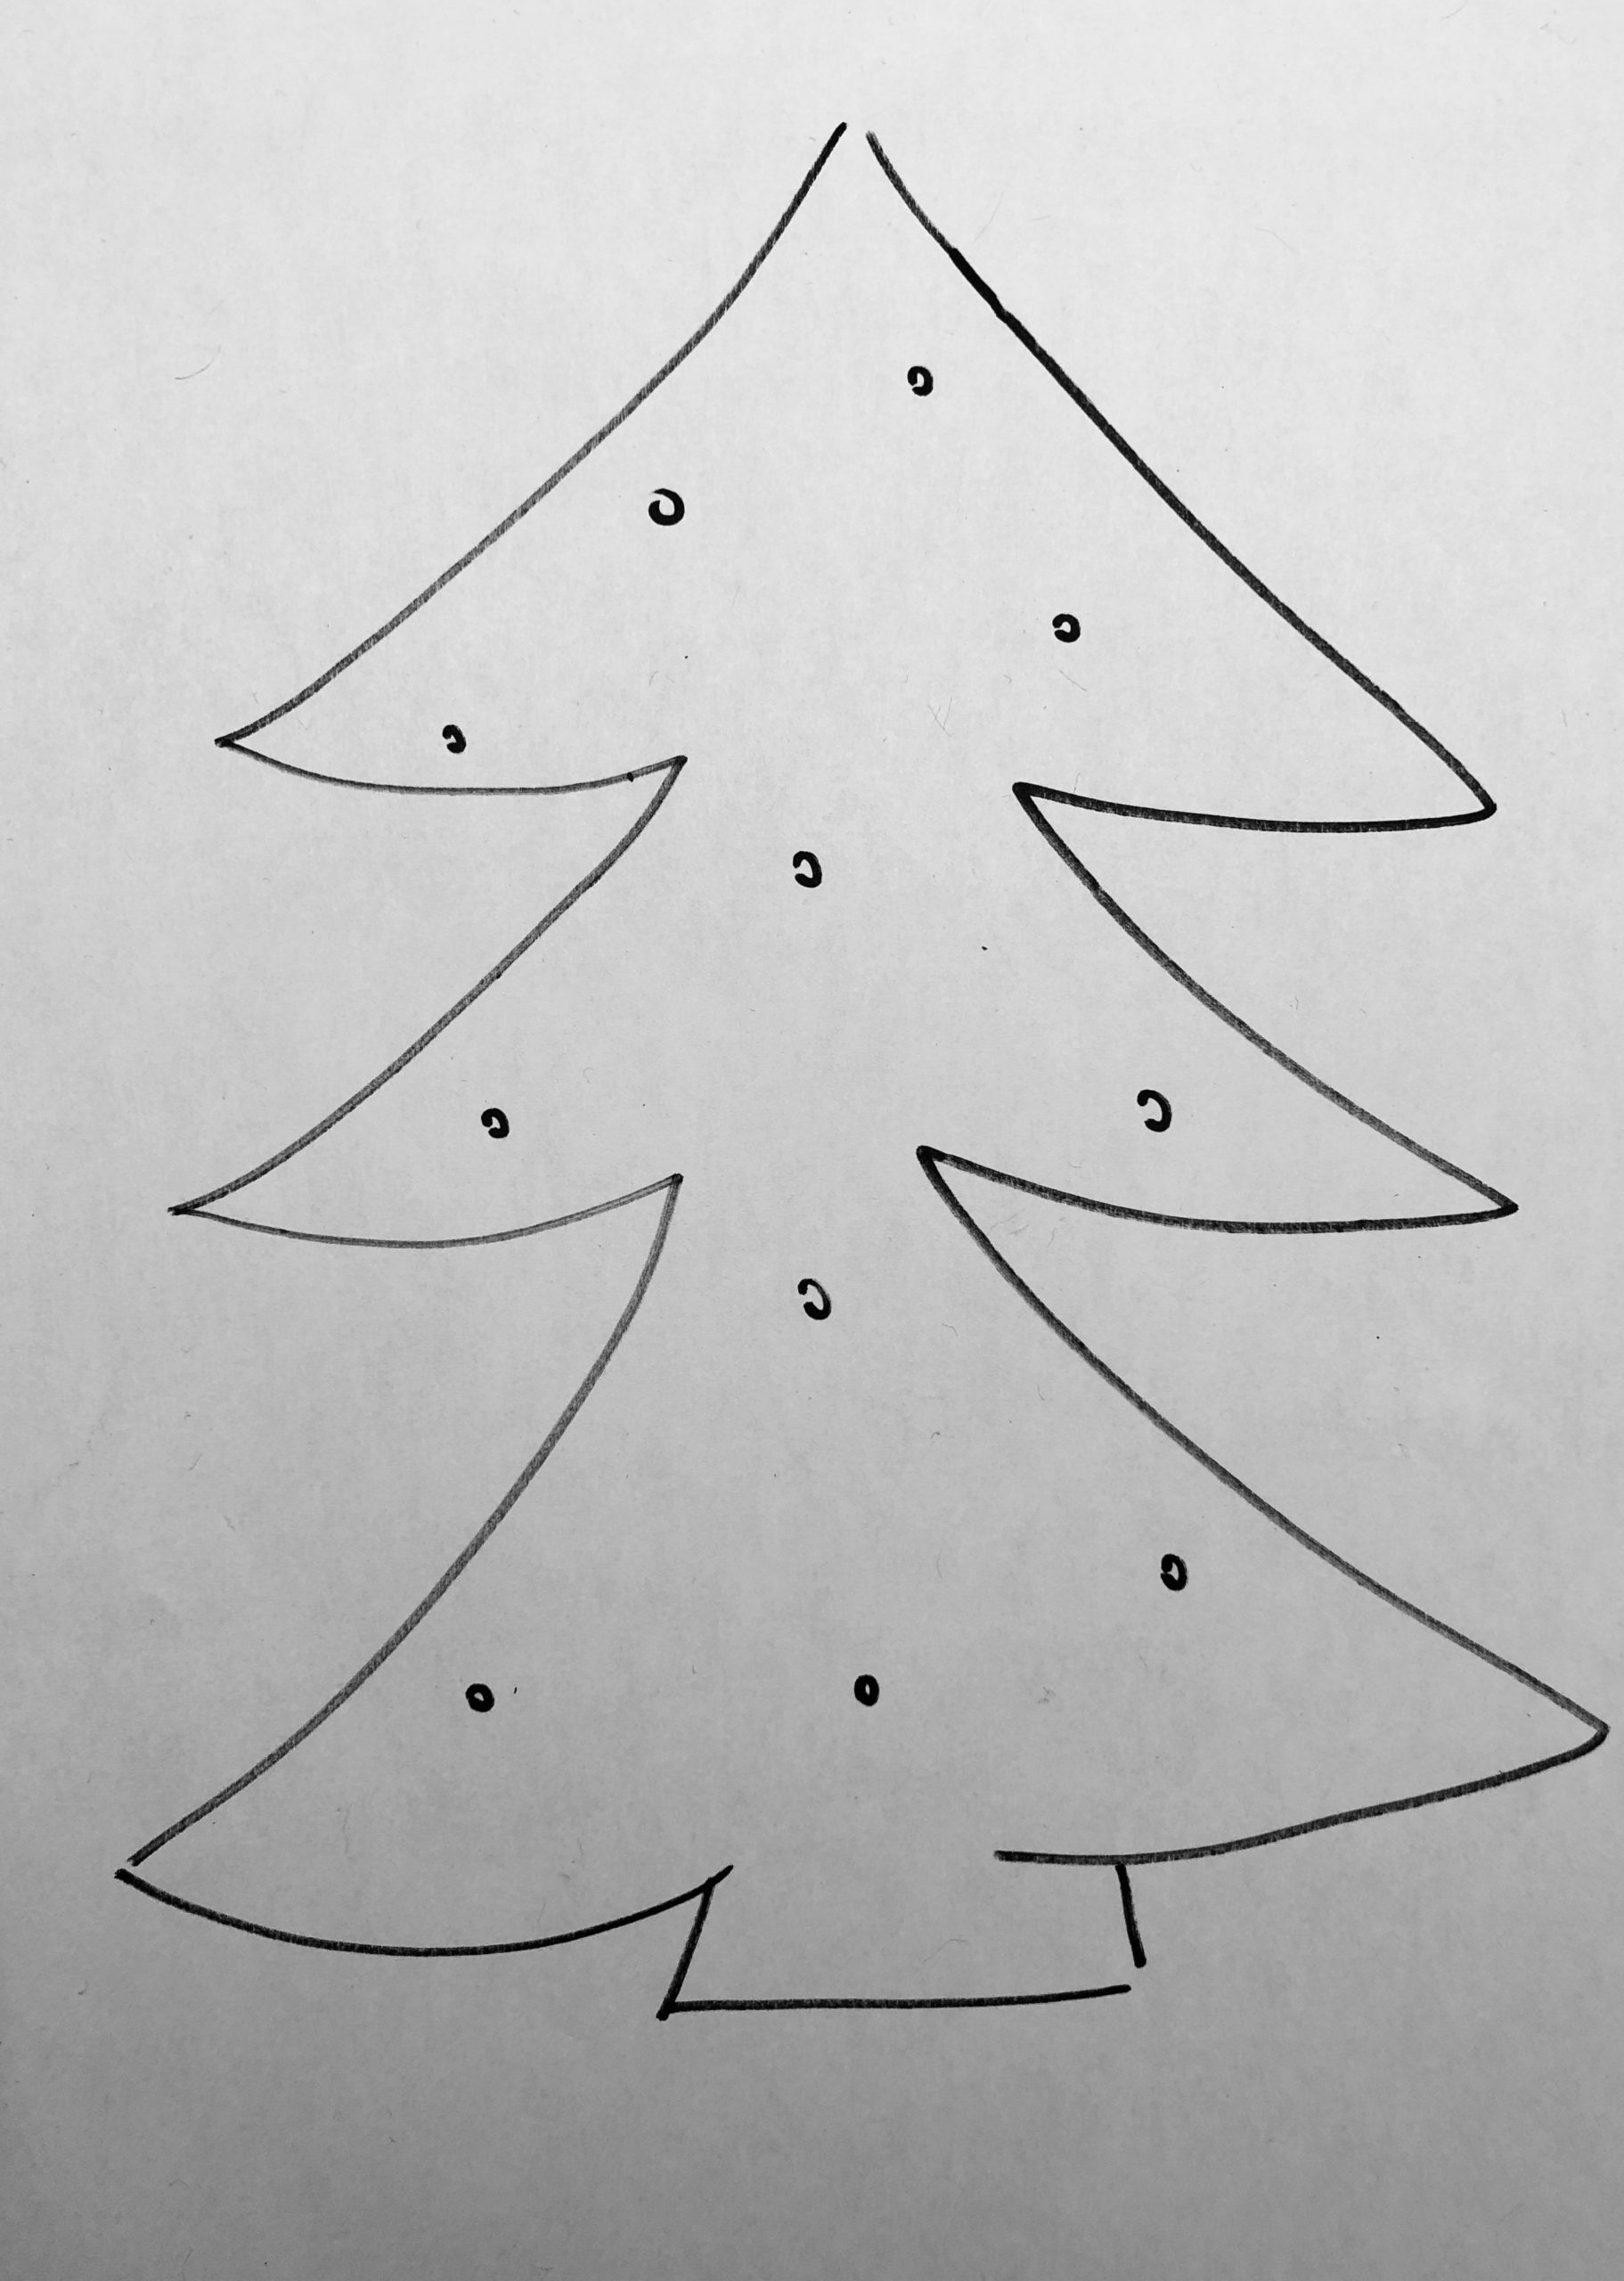 Bild zum Schritt 3 für die Kinder-Beschäftigung: 'Solltet ihr einen Baum malen, dann markiert durch kleine Punkte,...'